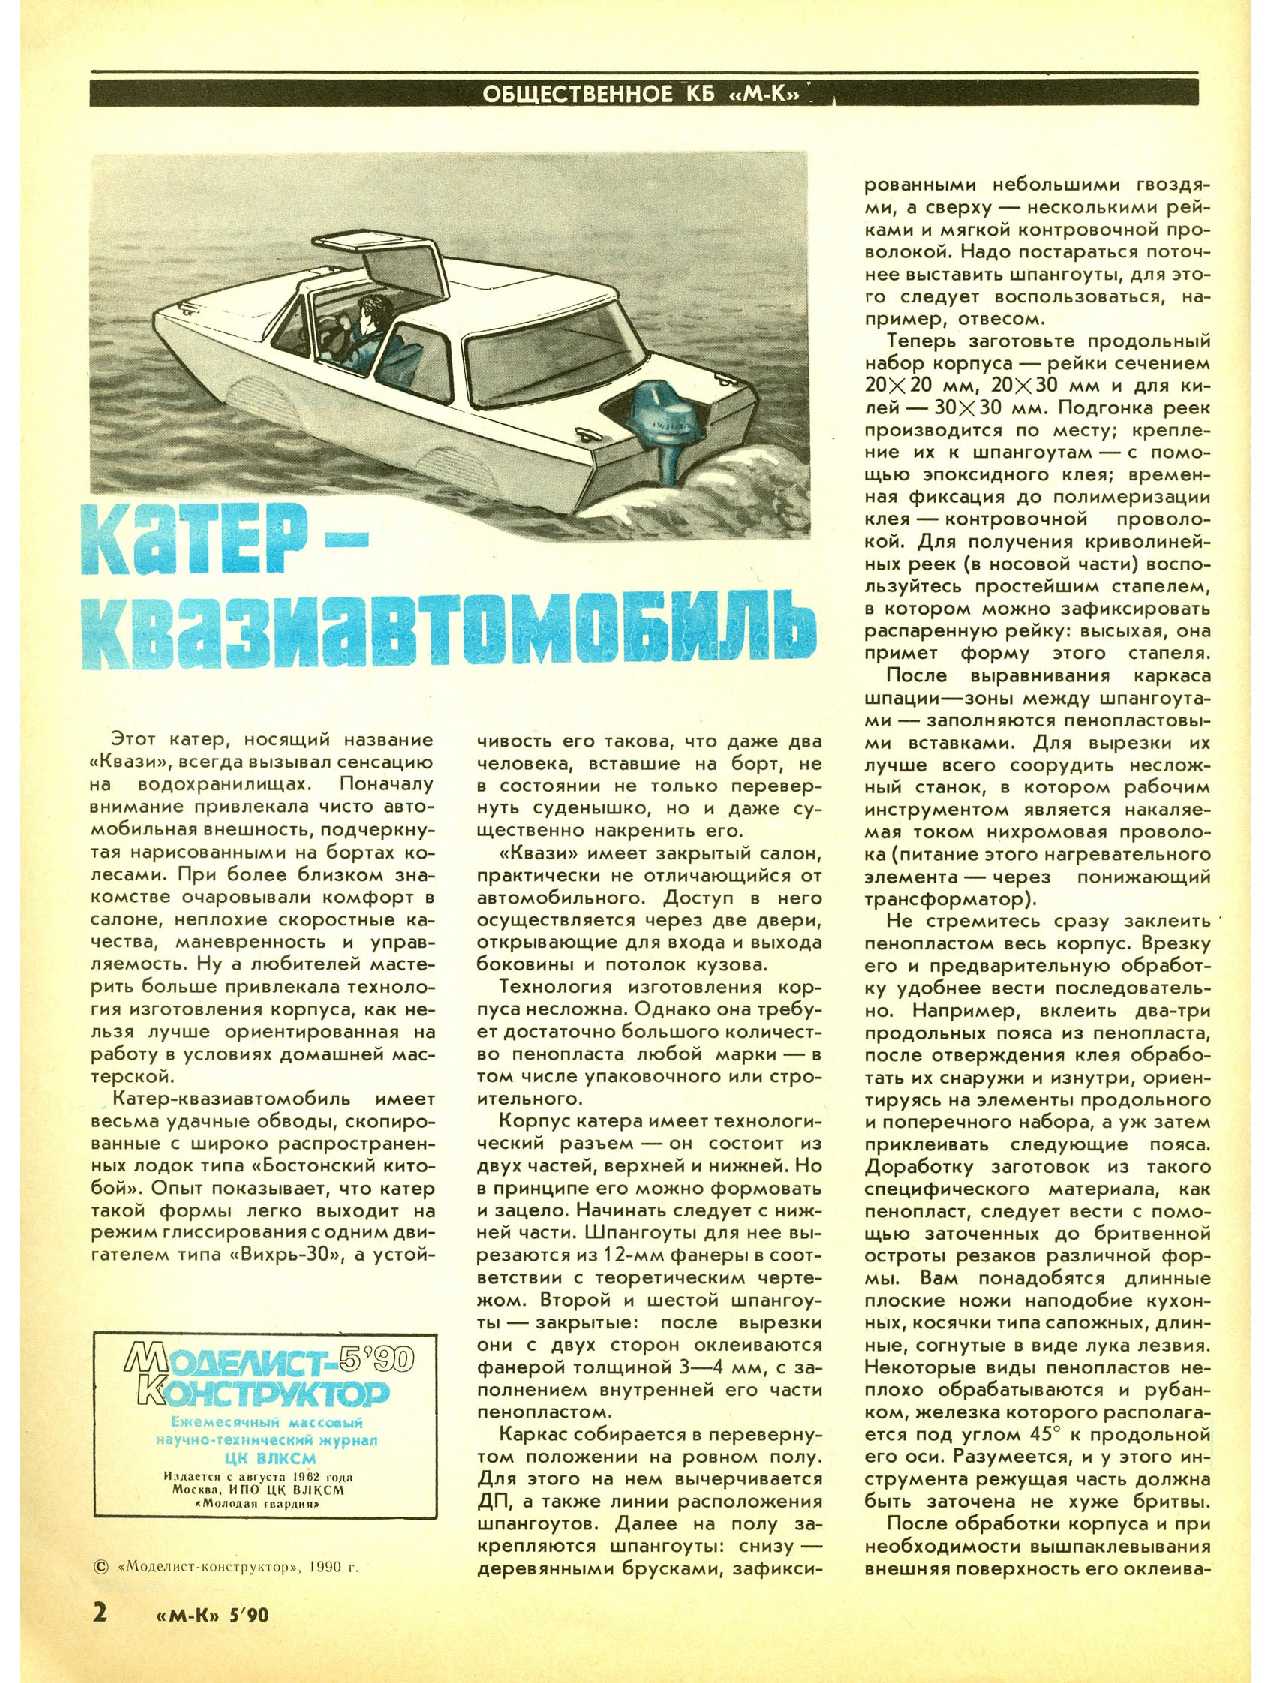 МК 5, 1990, 2 c.